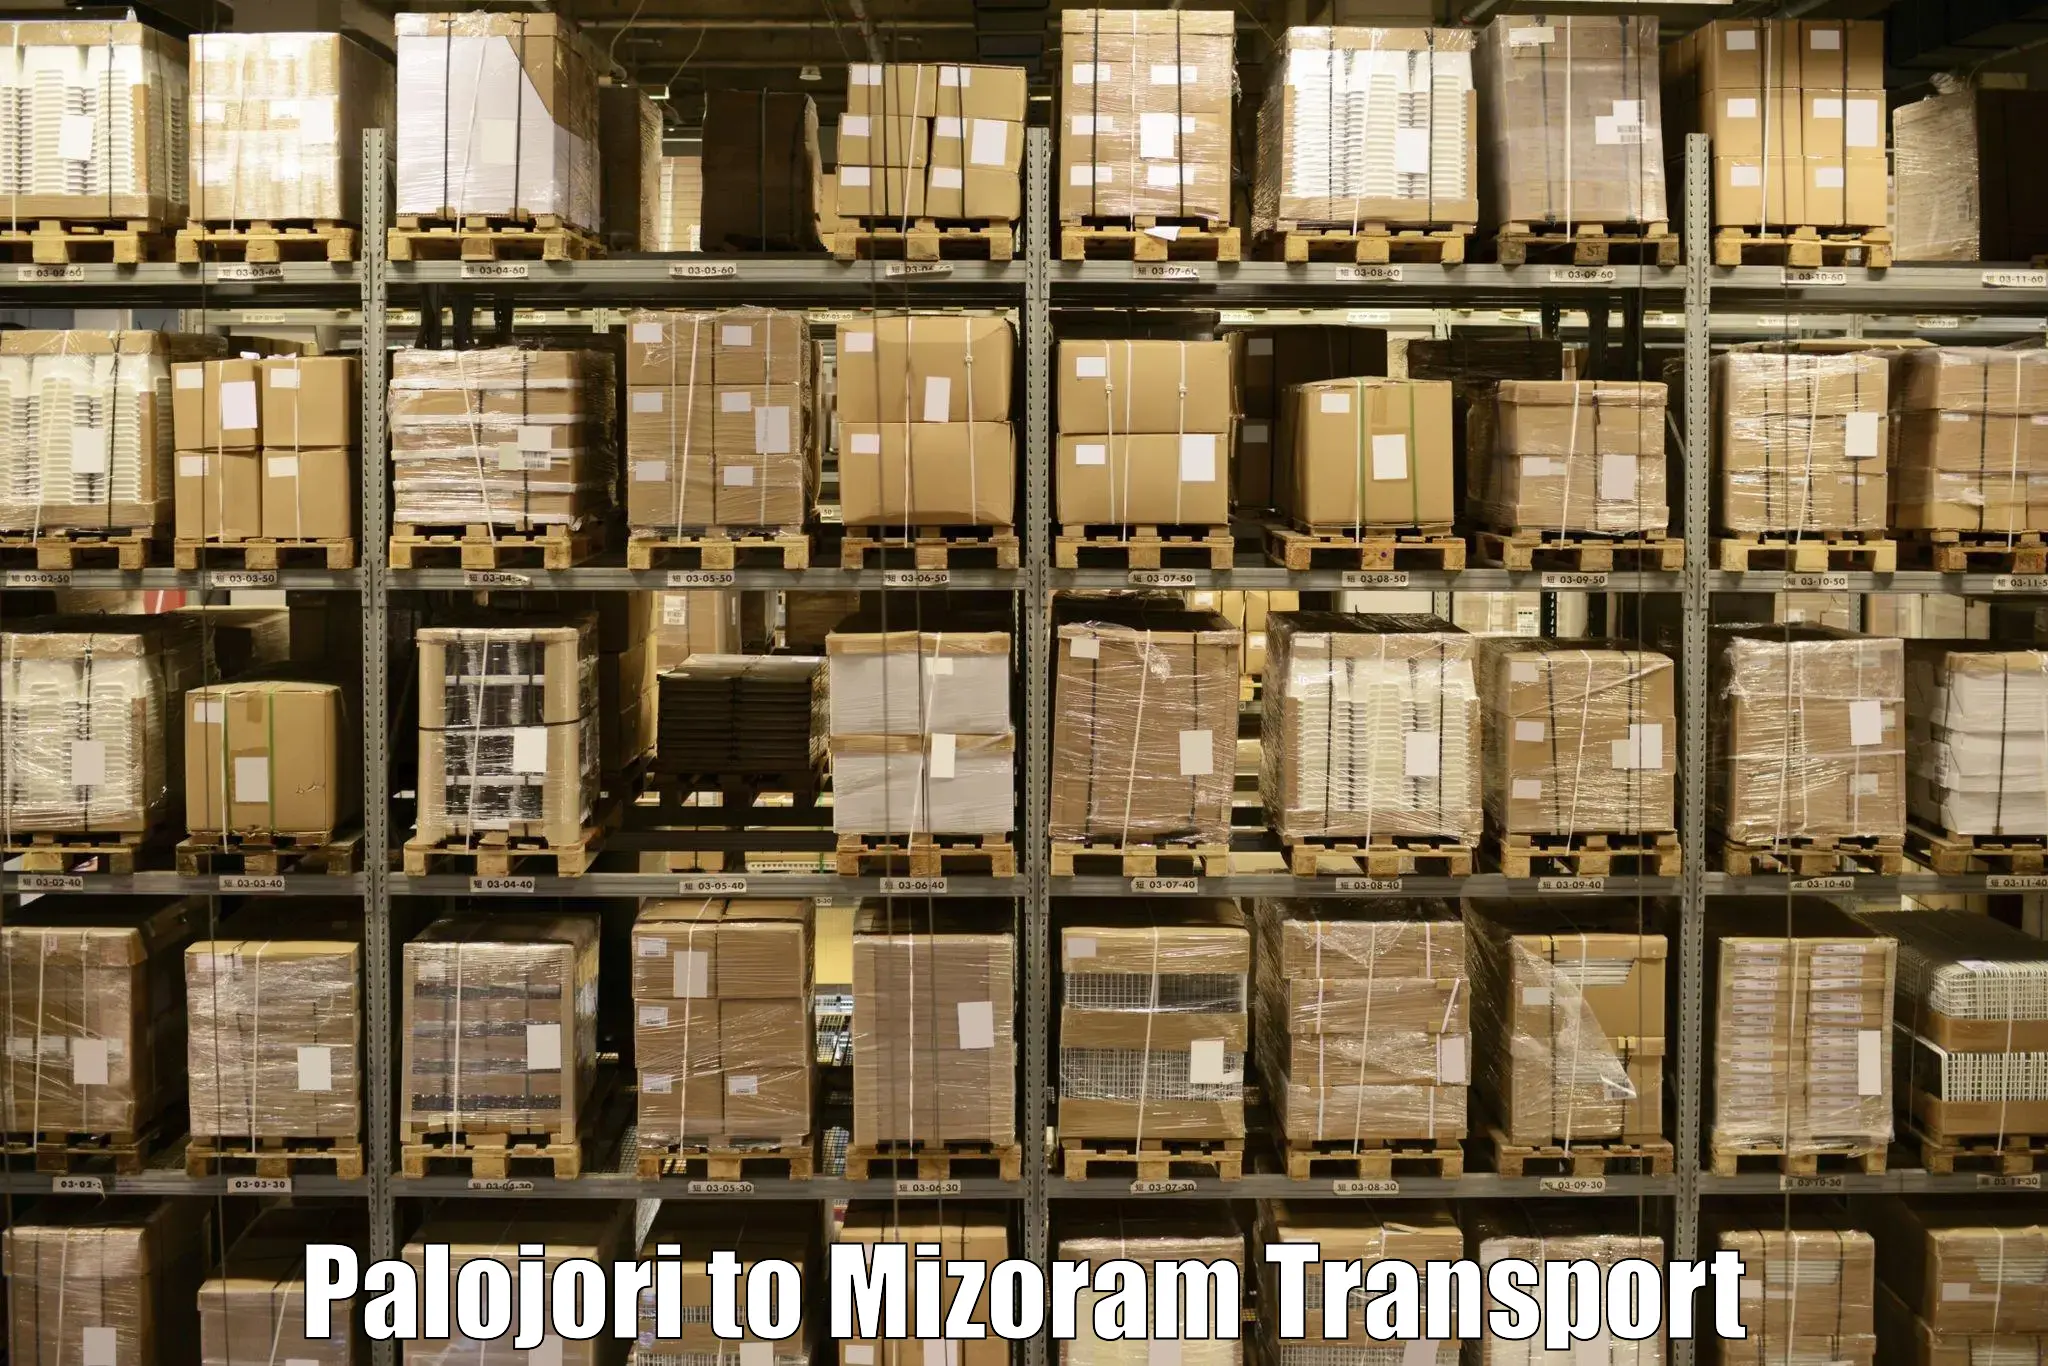 Furniture transport service Palojori to Thenzawl